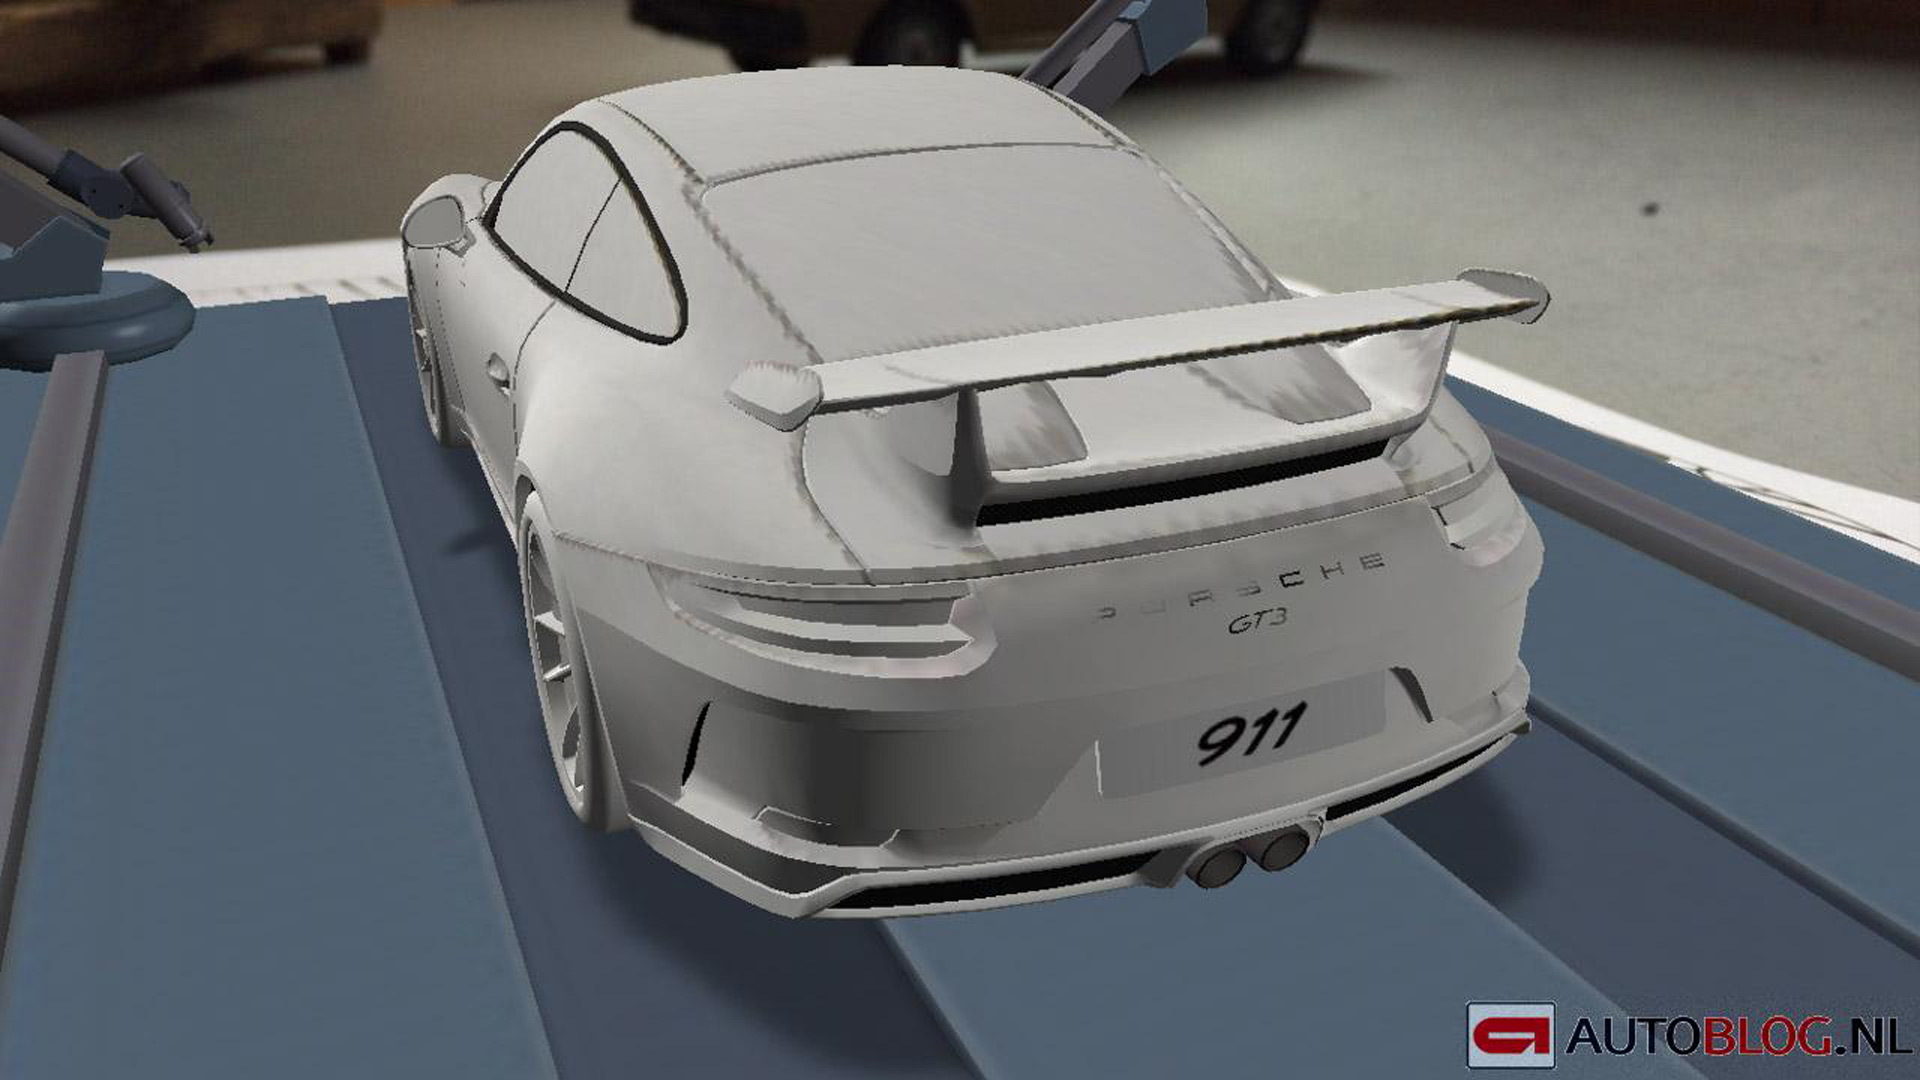 2017 Porsche 911 GT3 leaked - Image via Autoblog.nl